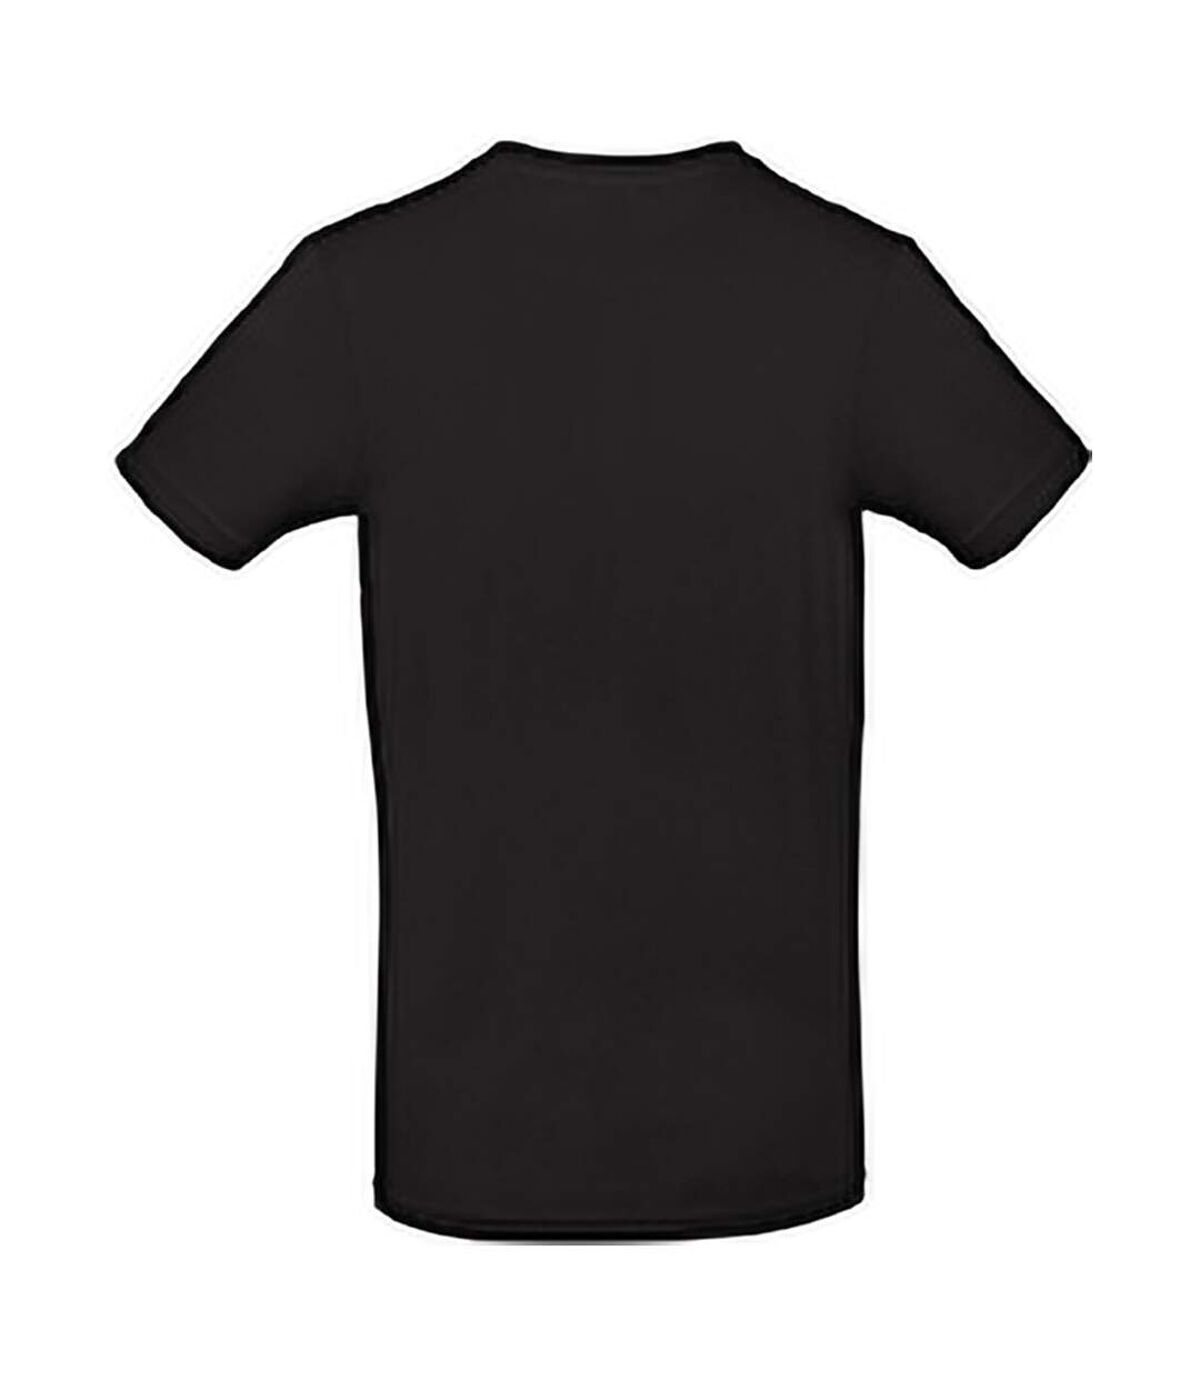 B&C - T-shirt manches courtes - Homme (Noir) - UTBC3911